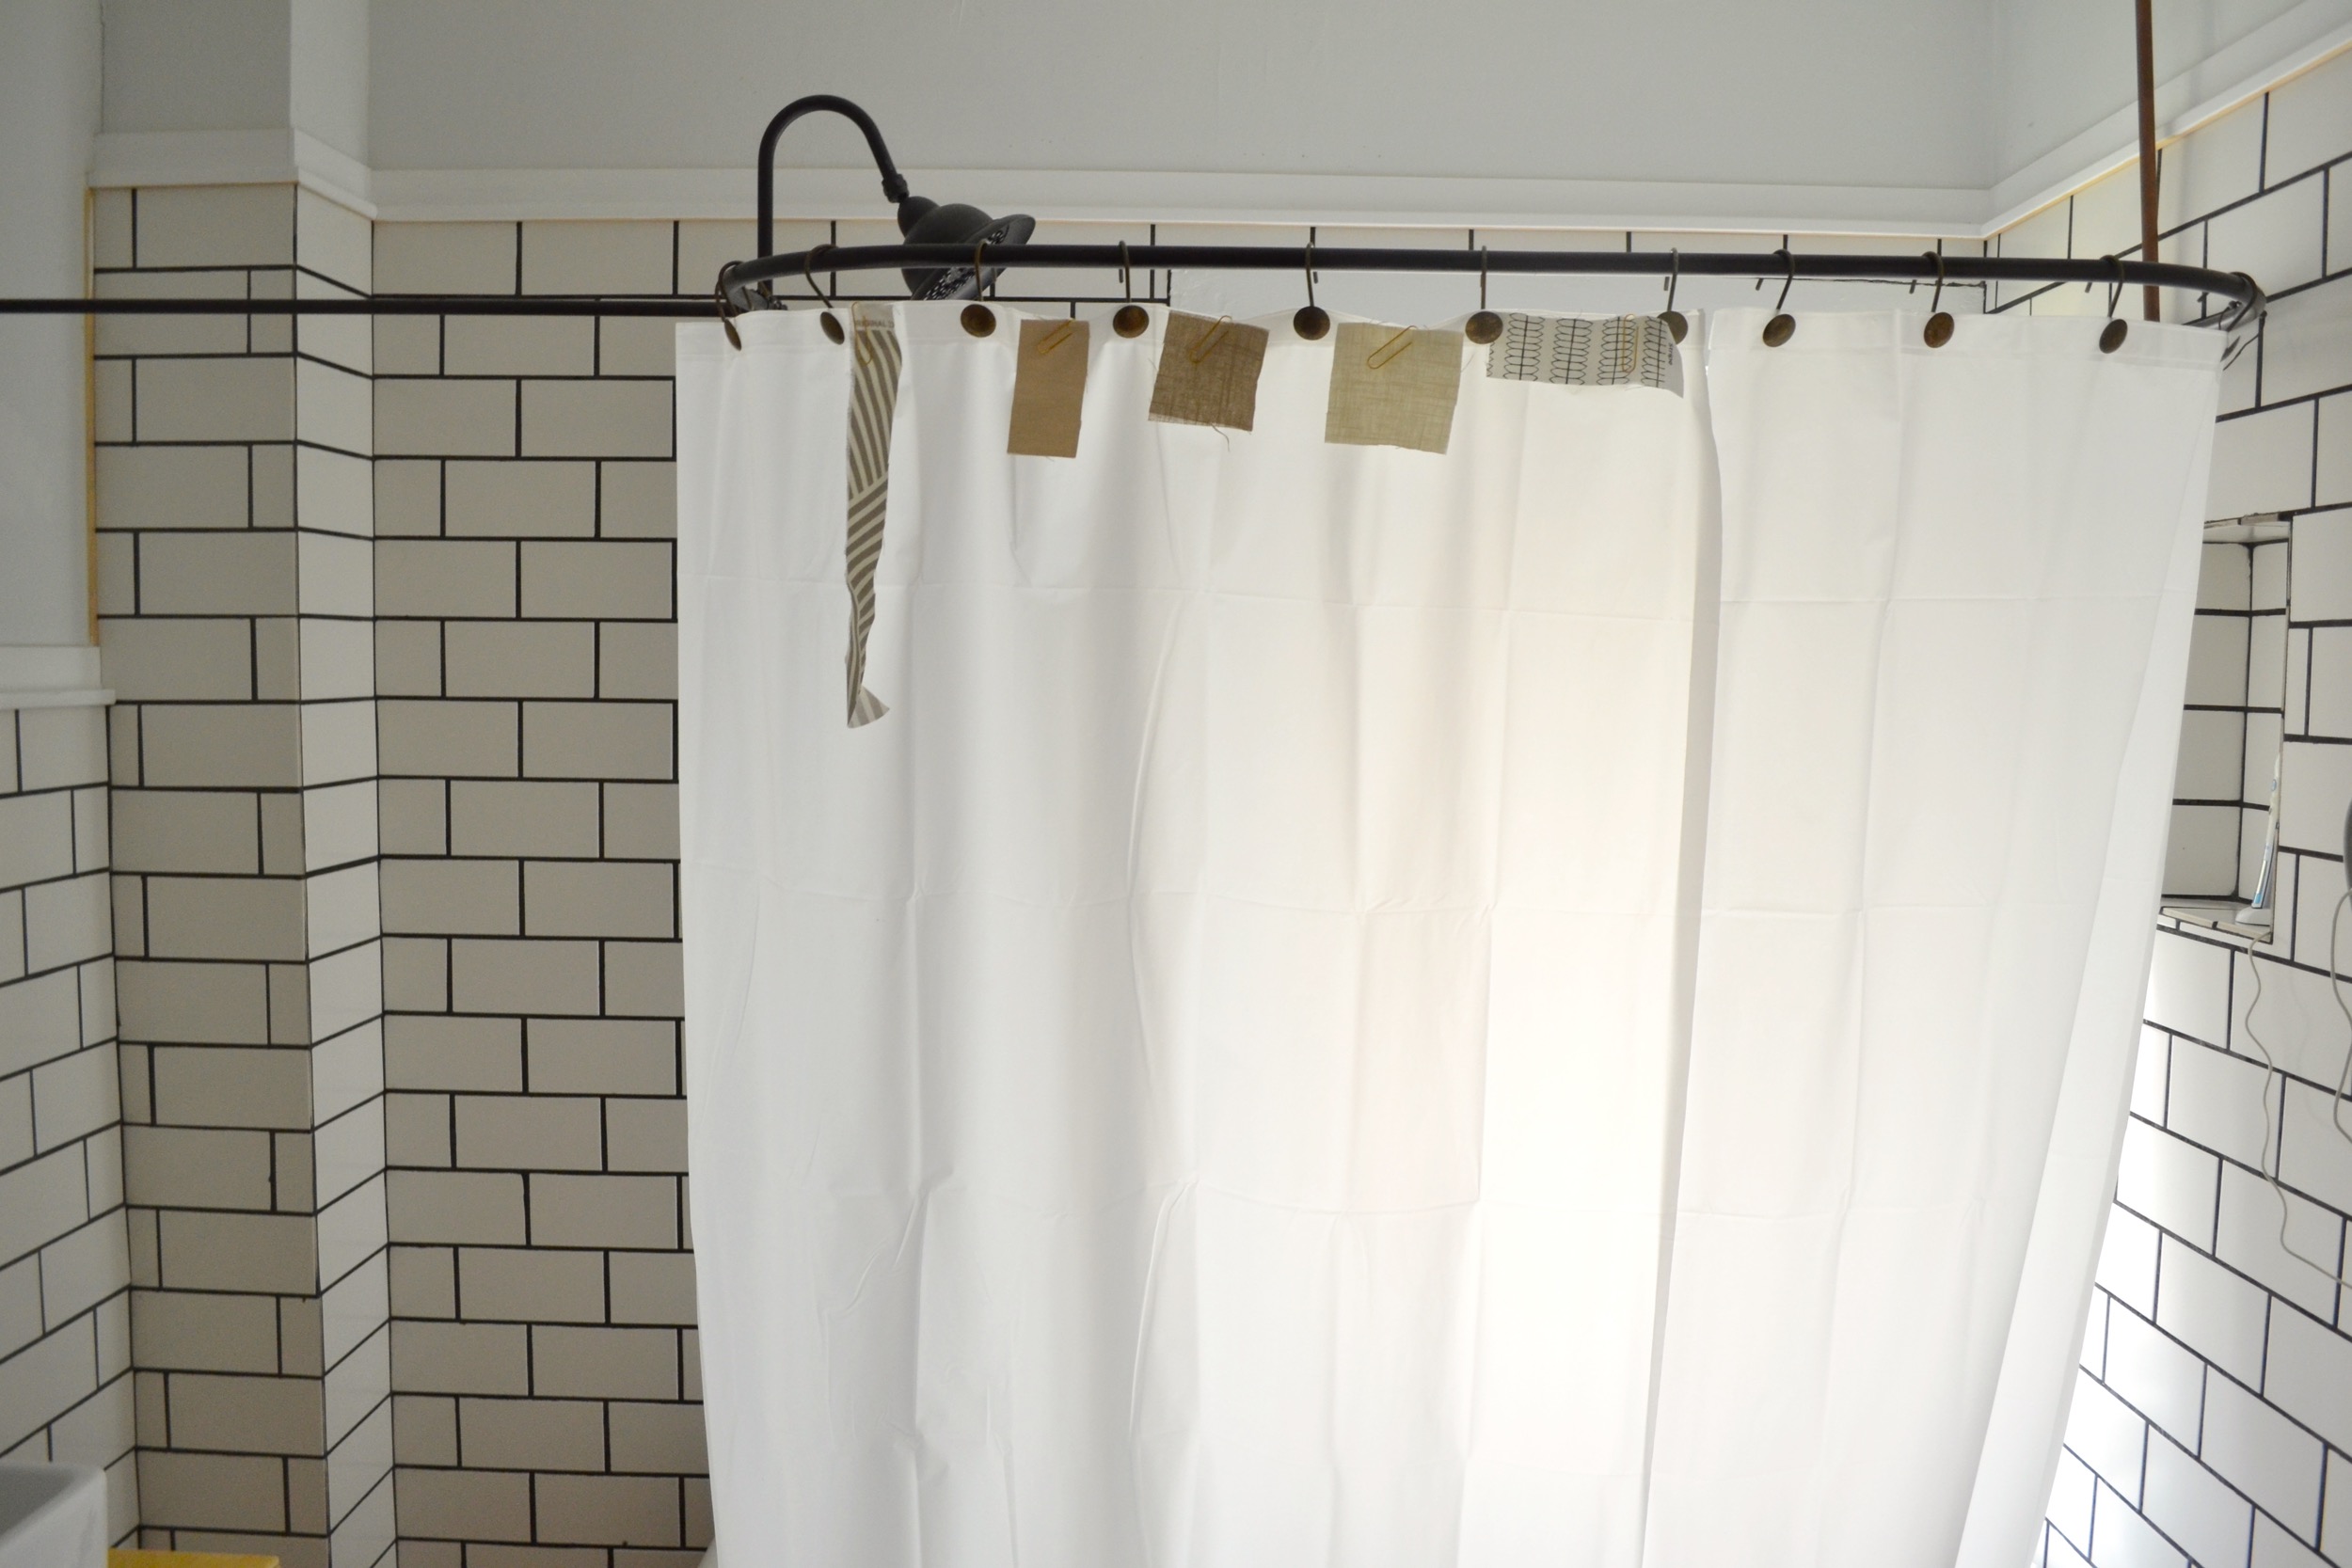 A Diy Clawfoot Tub Shower Curtain For, Diy Clawfoot Tub Shower Curtain Rod